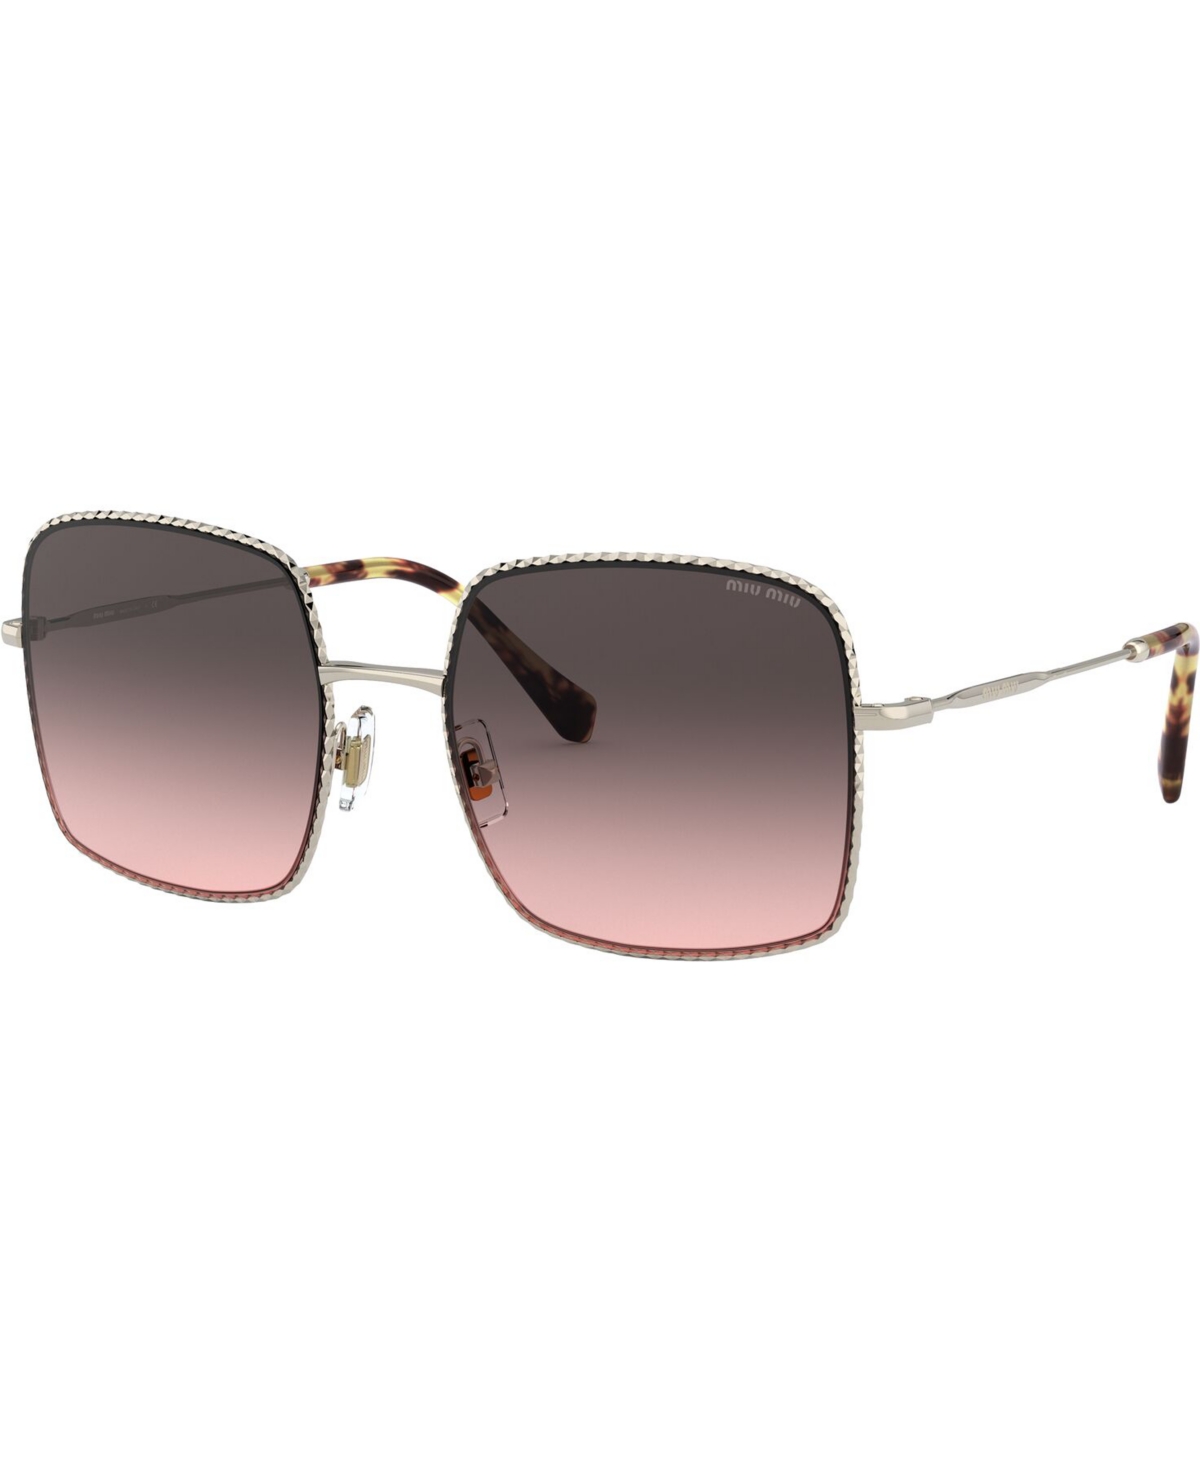 Miu Miu Sunglasses, 0mu 61vs In Pale Gold,pink Gradient Grey